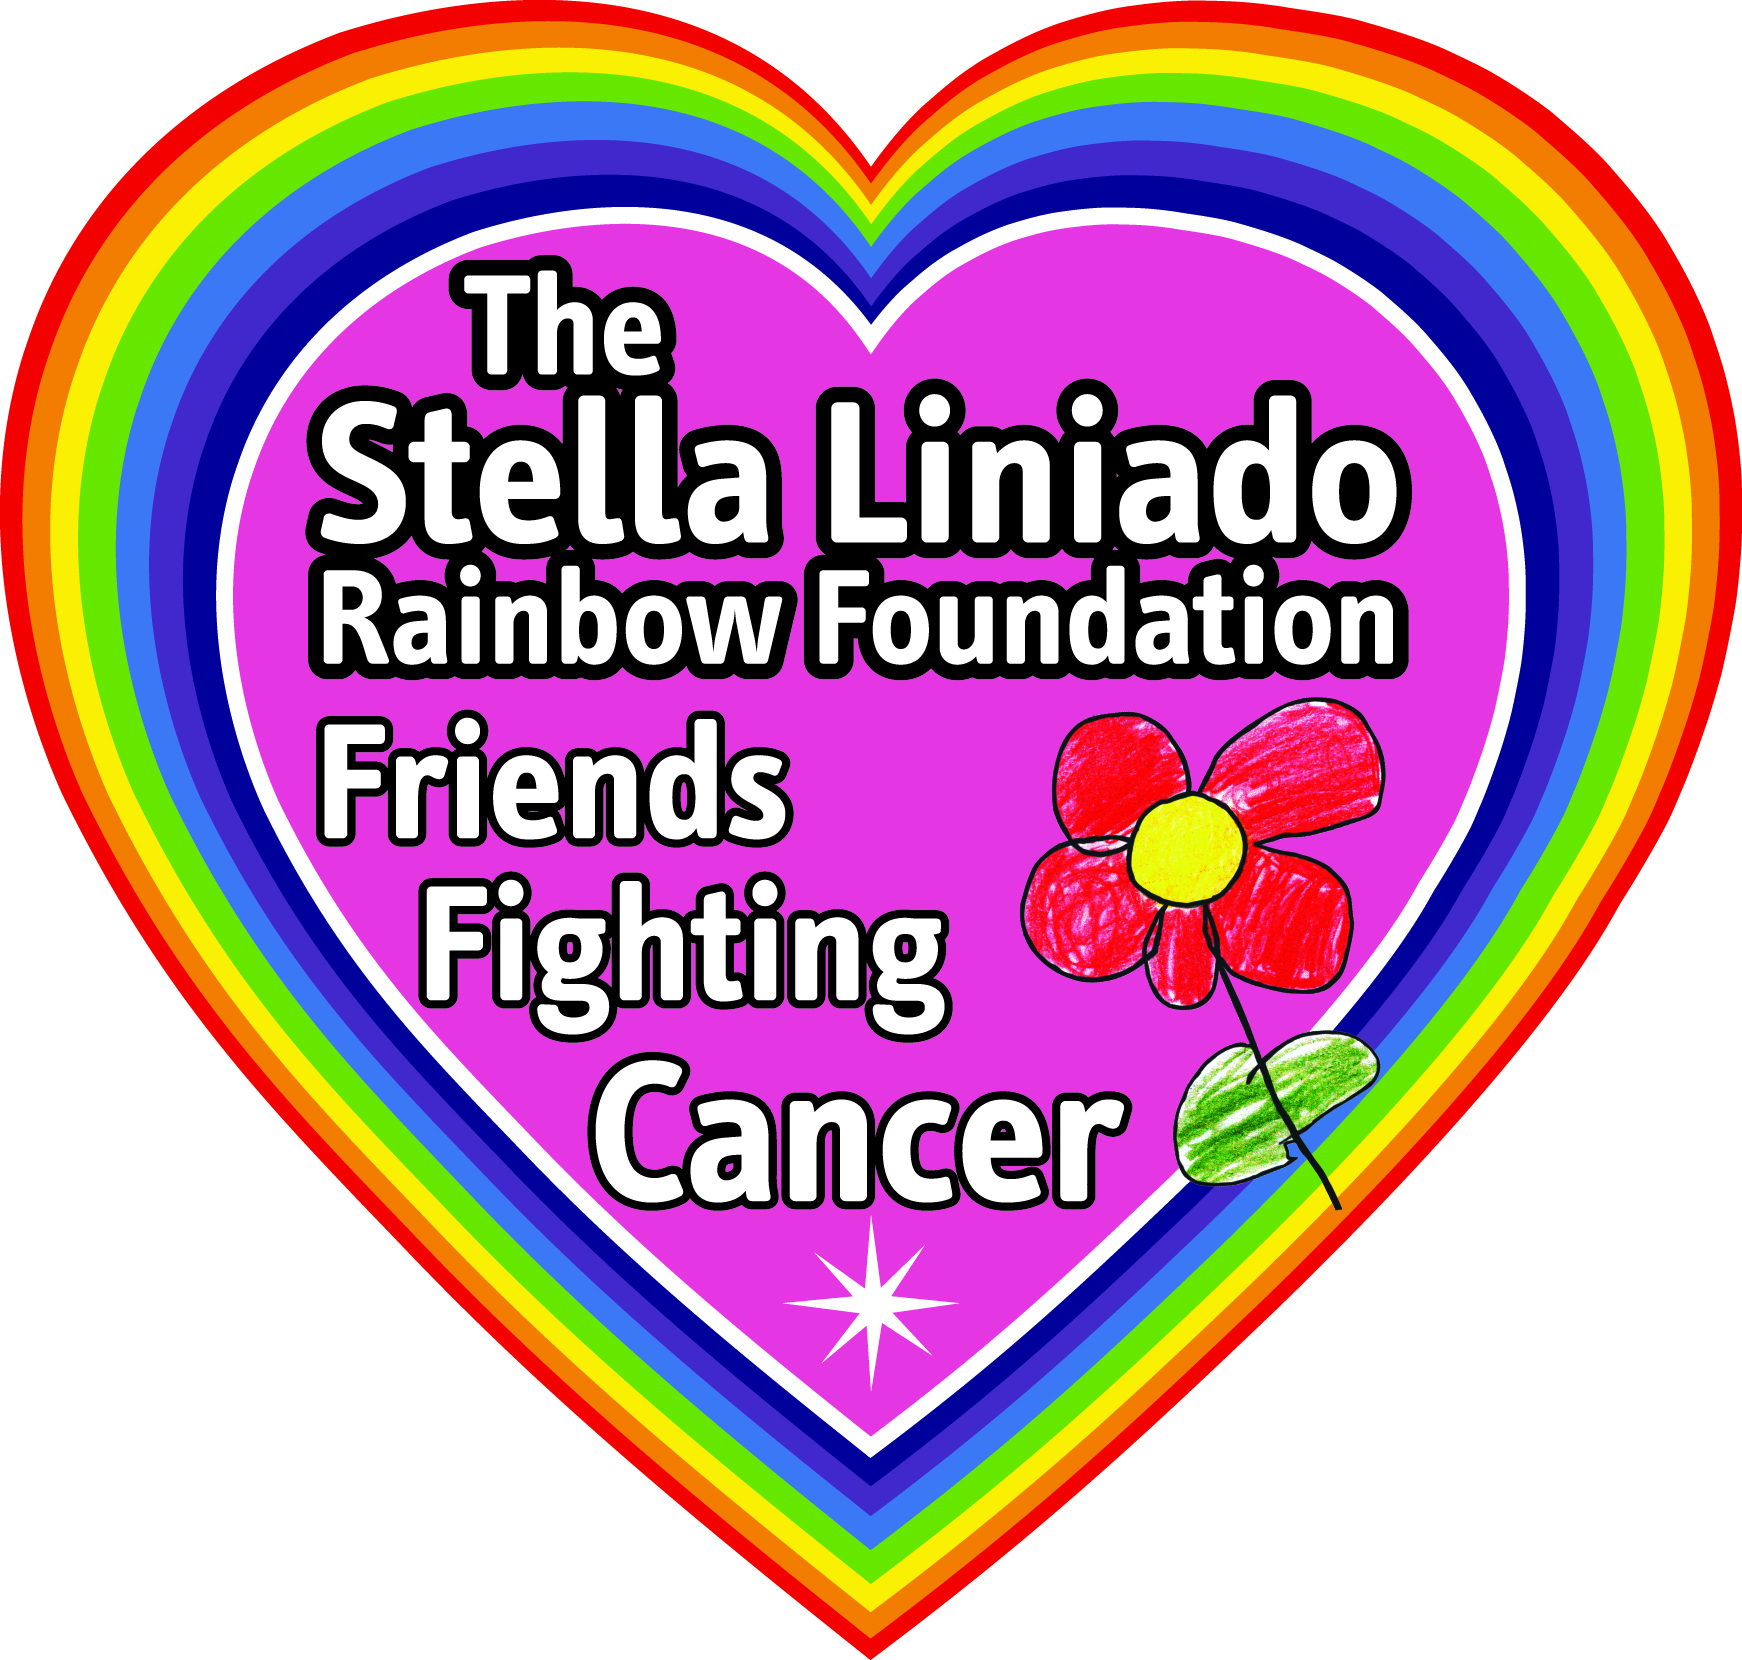 The Stella Liniado Rainbow Foundation